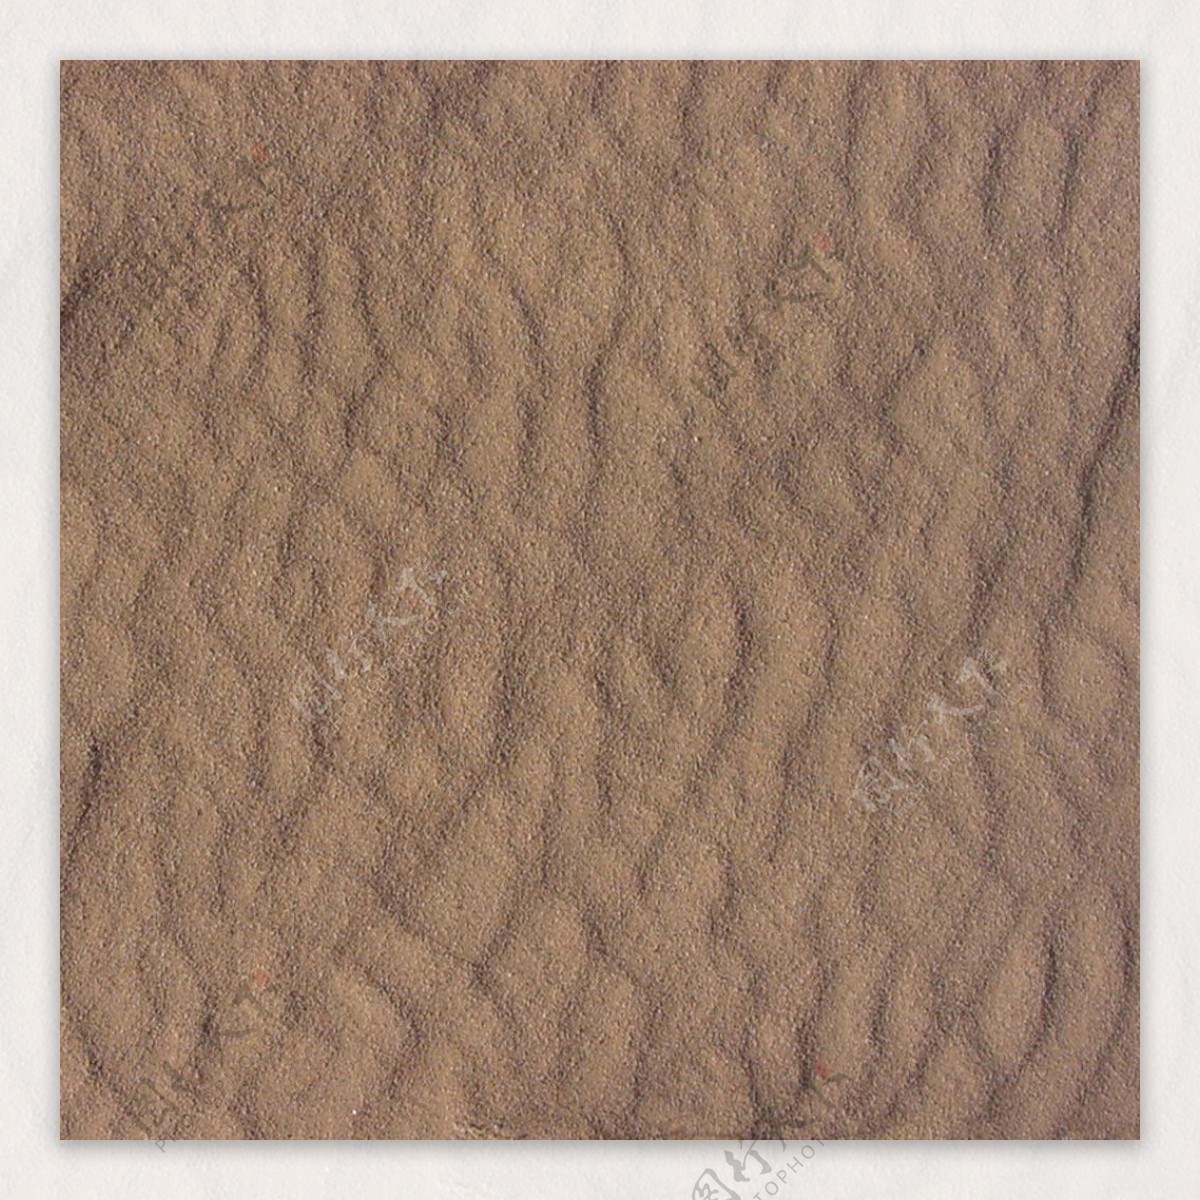 沙丘地貌材质贴图